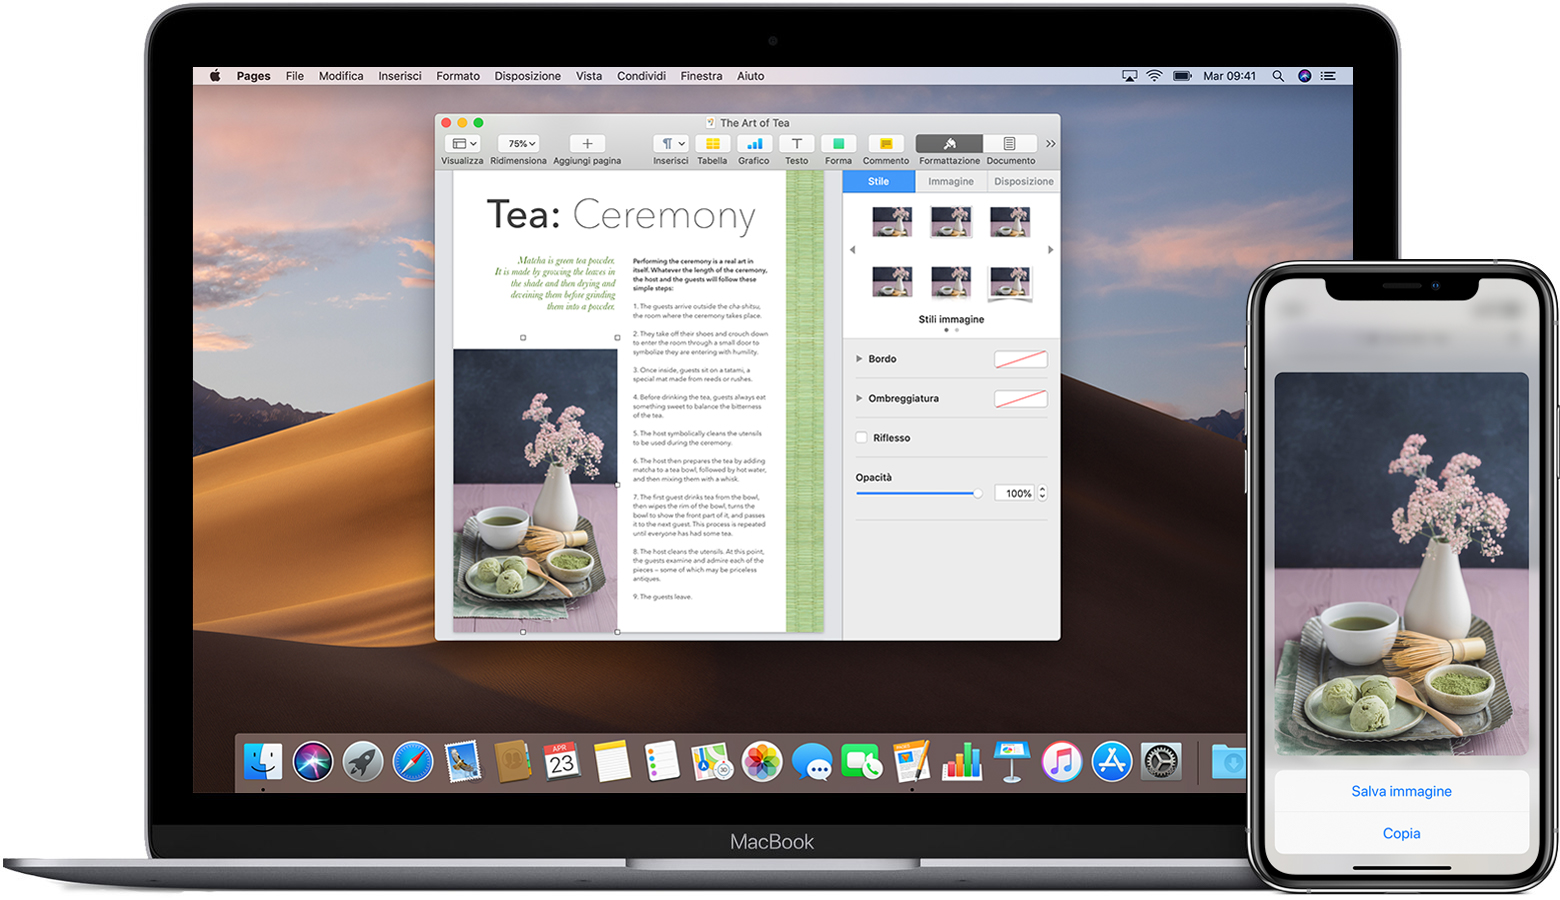 Un iPhone che visualizza un'immagine con l'opzione Copia visualizzata, accanto a un MacBook con un documento di Pages aperto che contiene la stessa immagine.